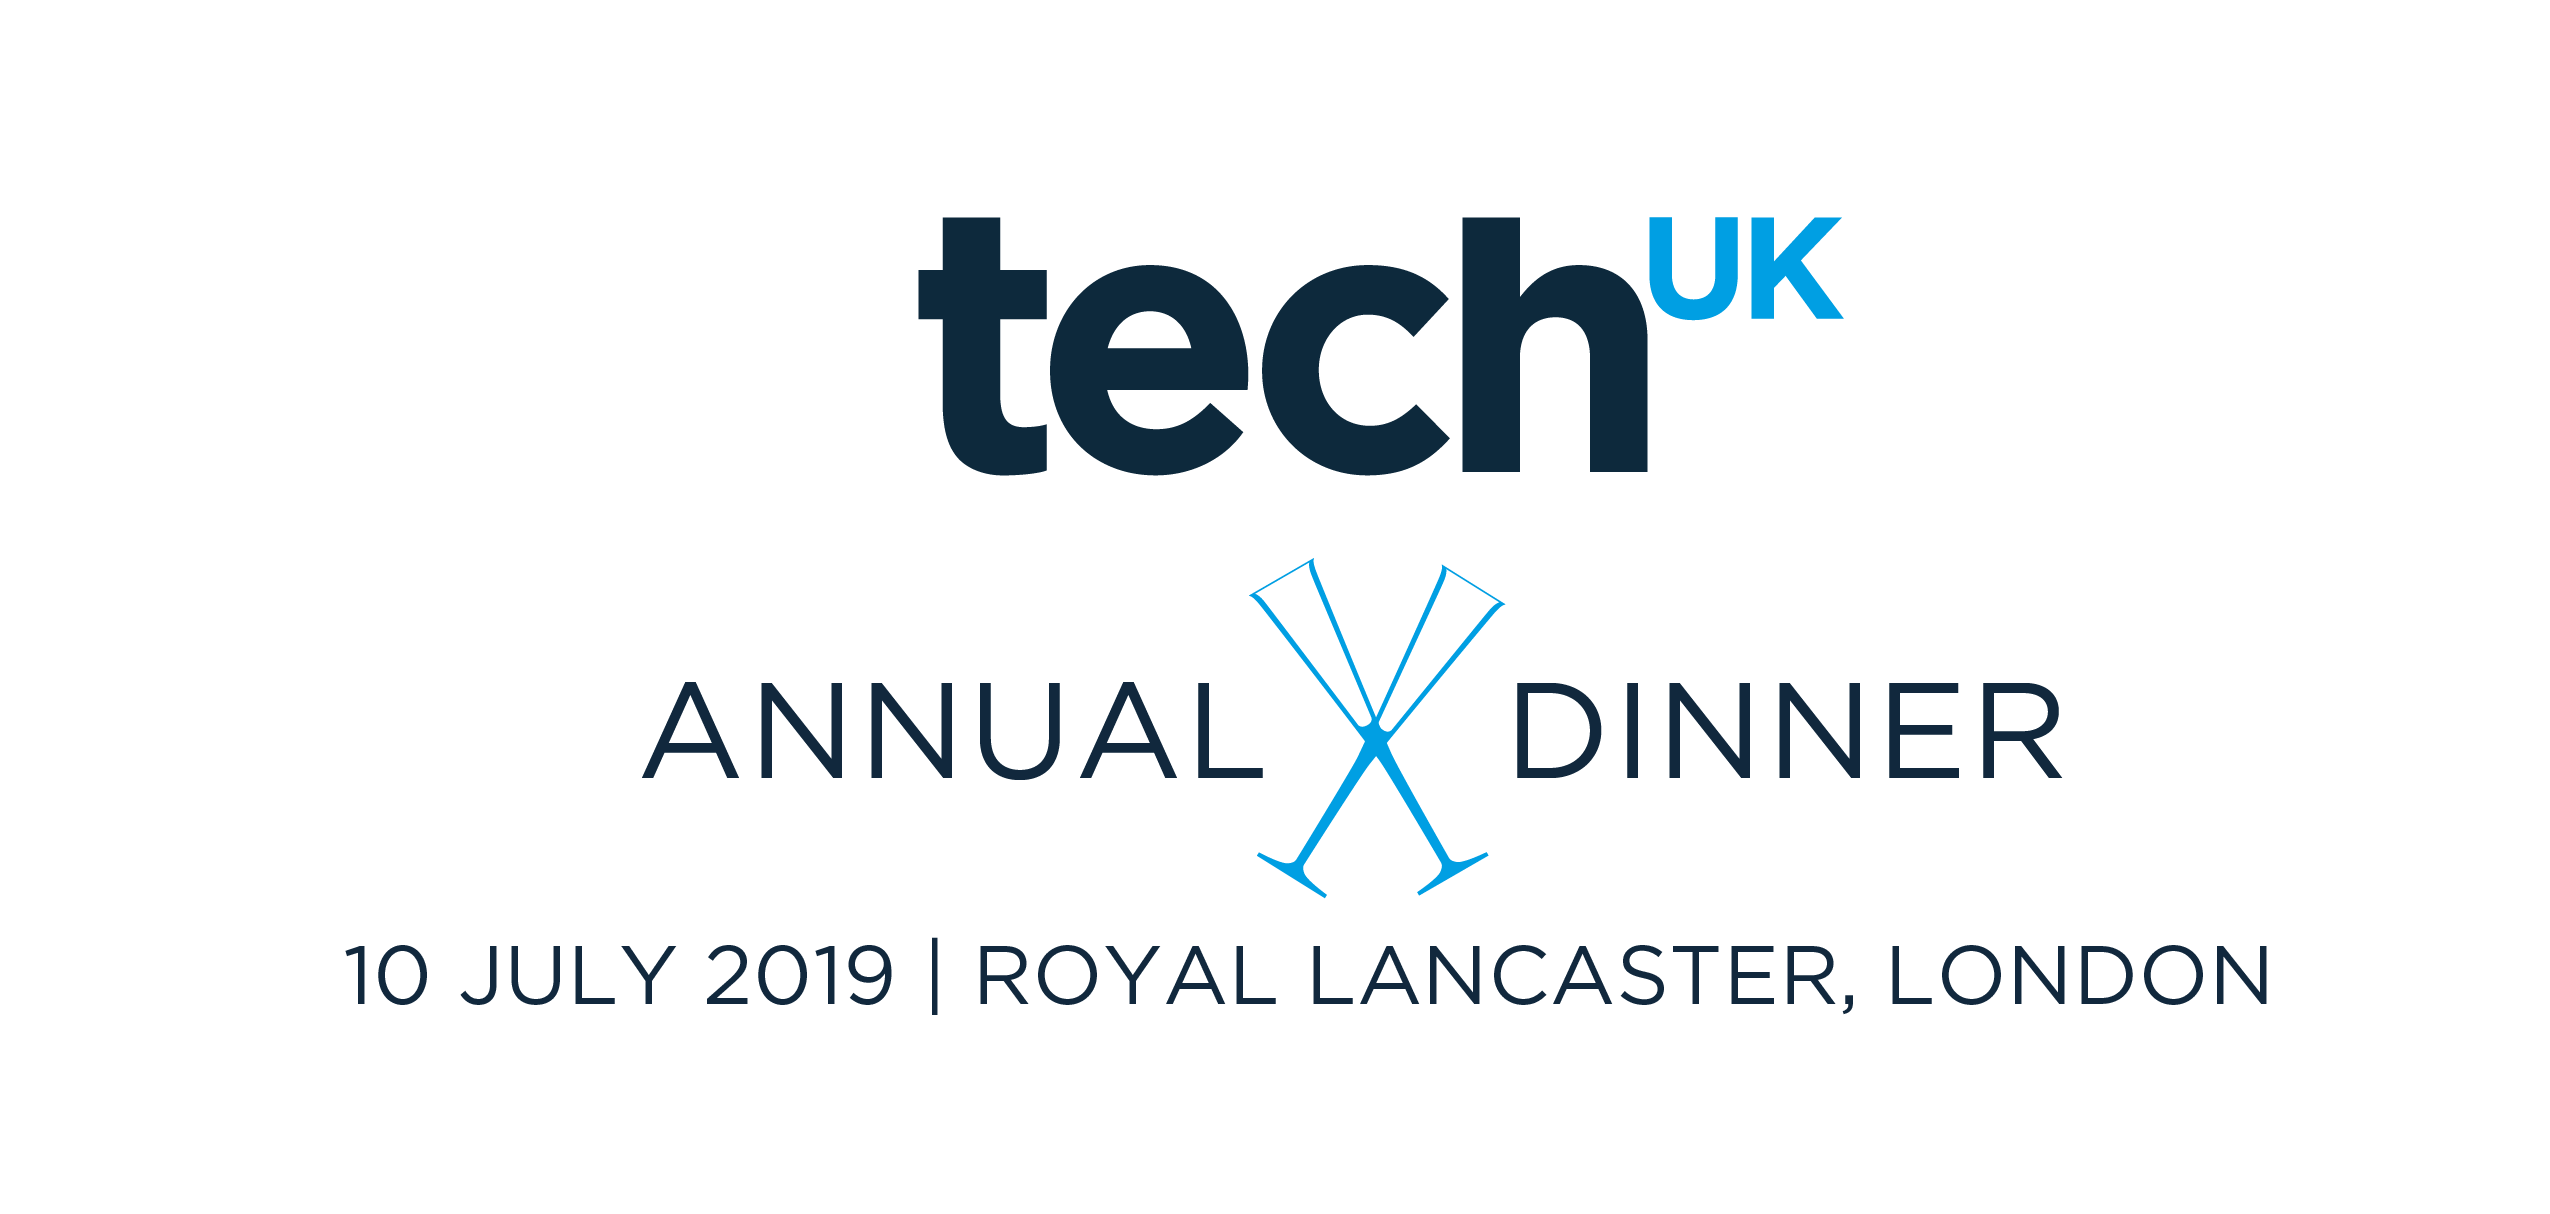 Dinner Logo - Annual dinner - Agenda